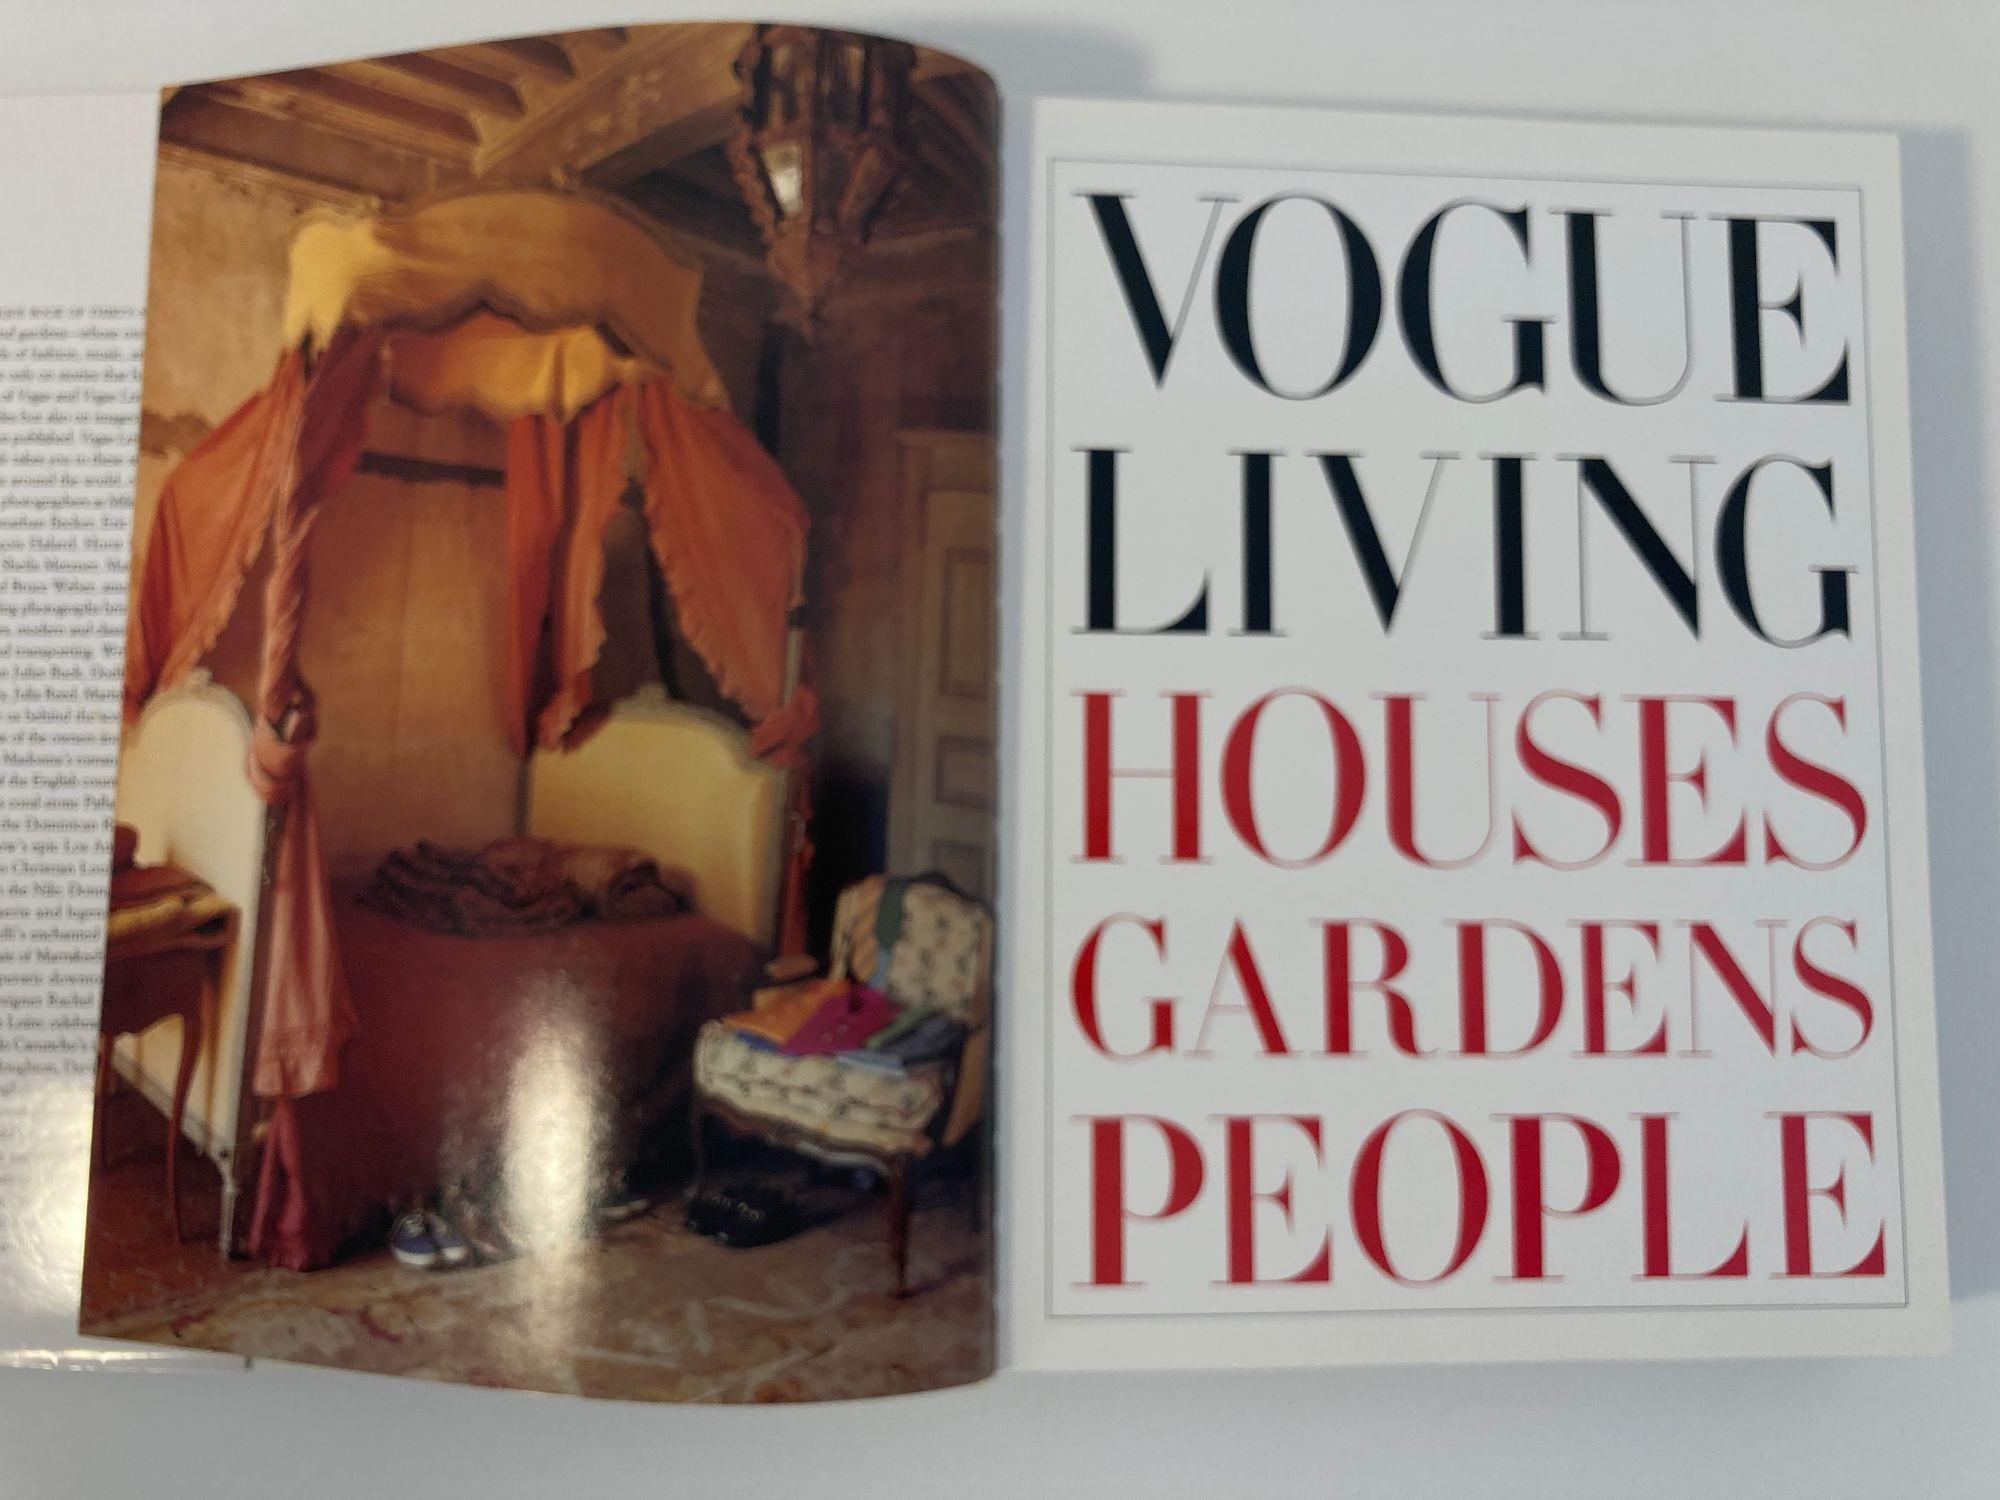 Livre « Vogue Living Houses Gardens People » (Les gens des maisons de jardin) de Hamish Bowles, première édition en vente 1